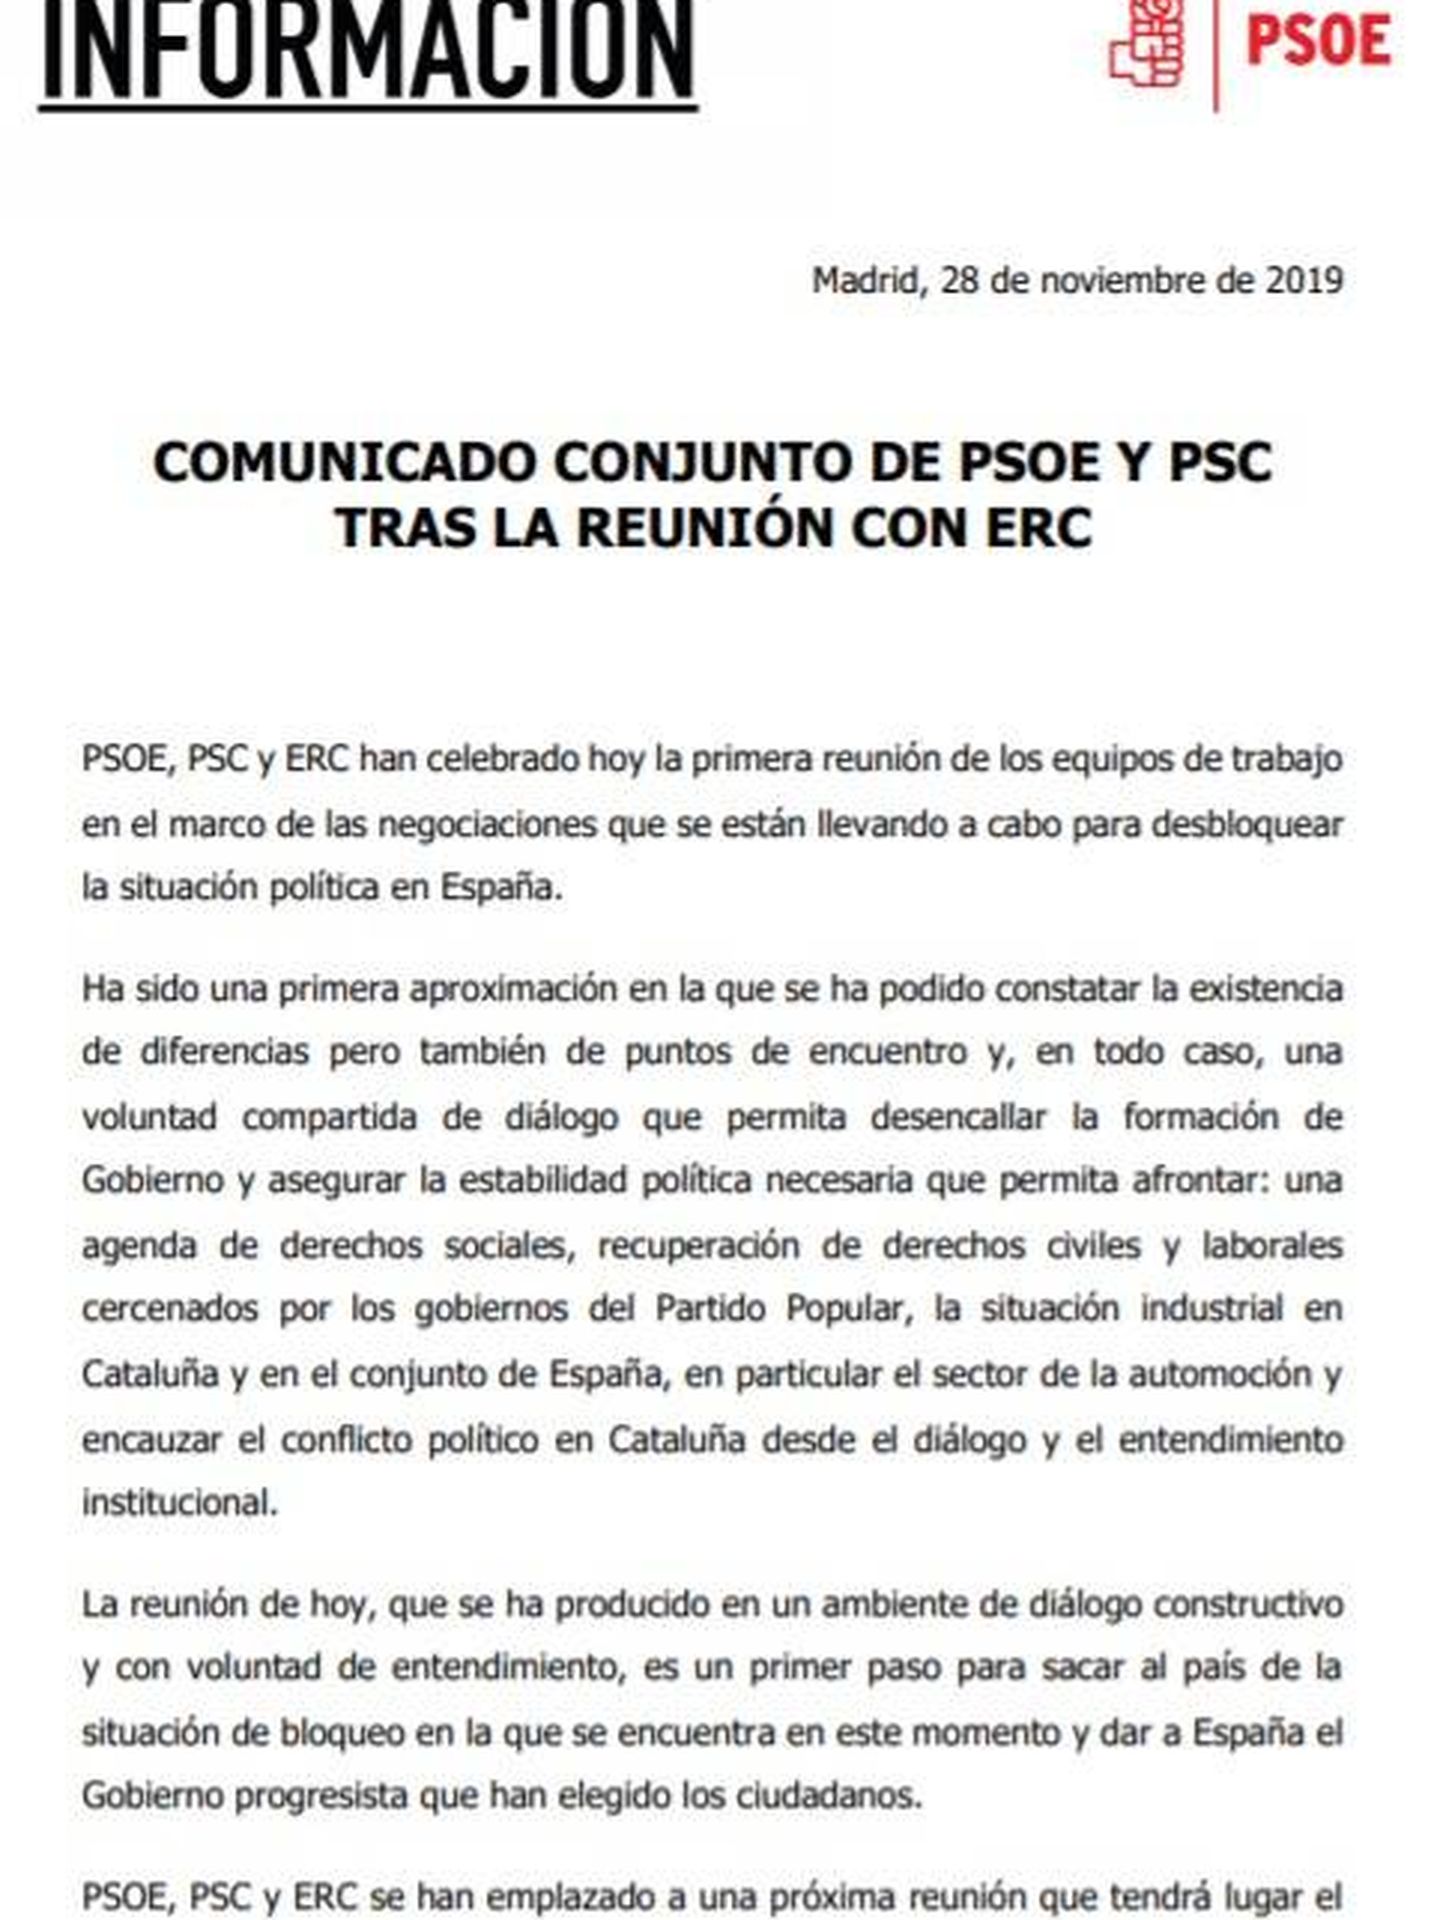 Consulte aquí en PDF los comunicados de PSOE y ERC tras su primera reunión formal este 28 de noviembre en el Congreso.